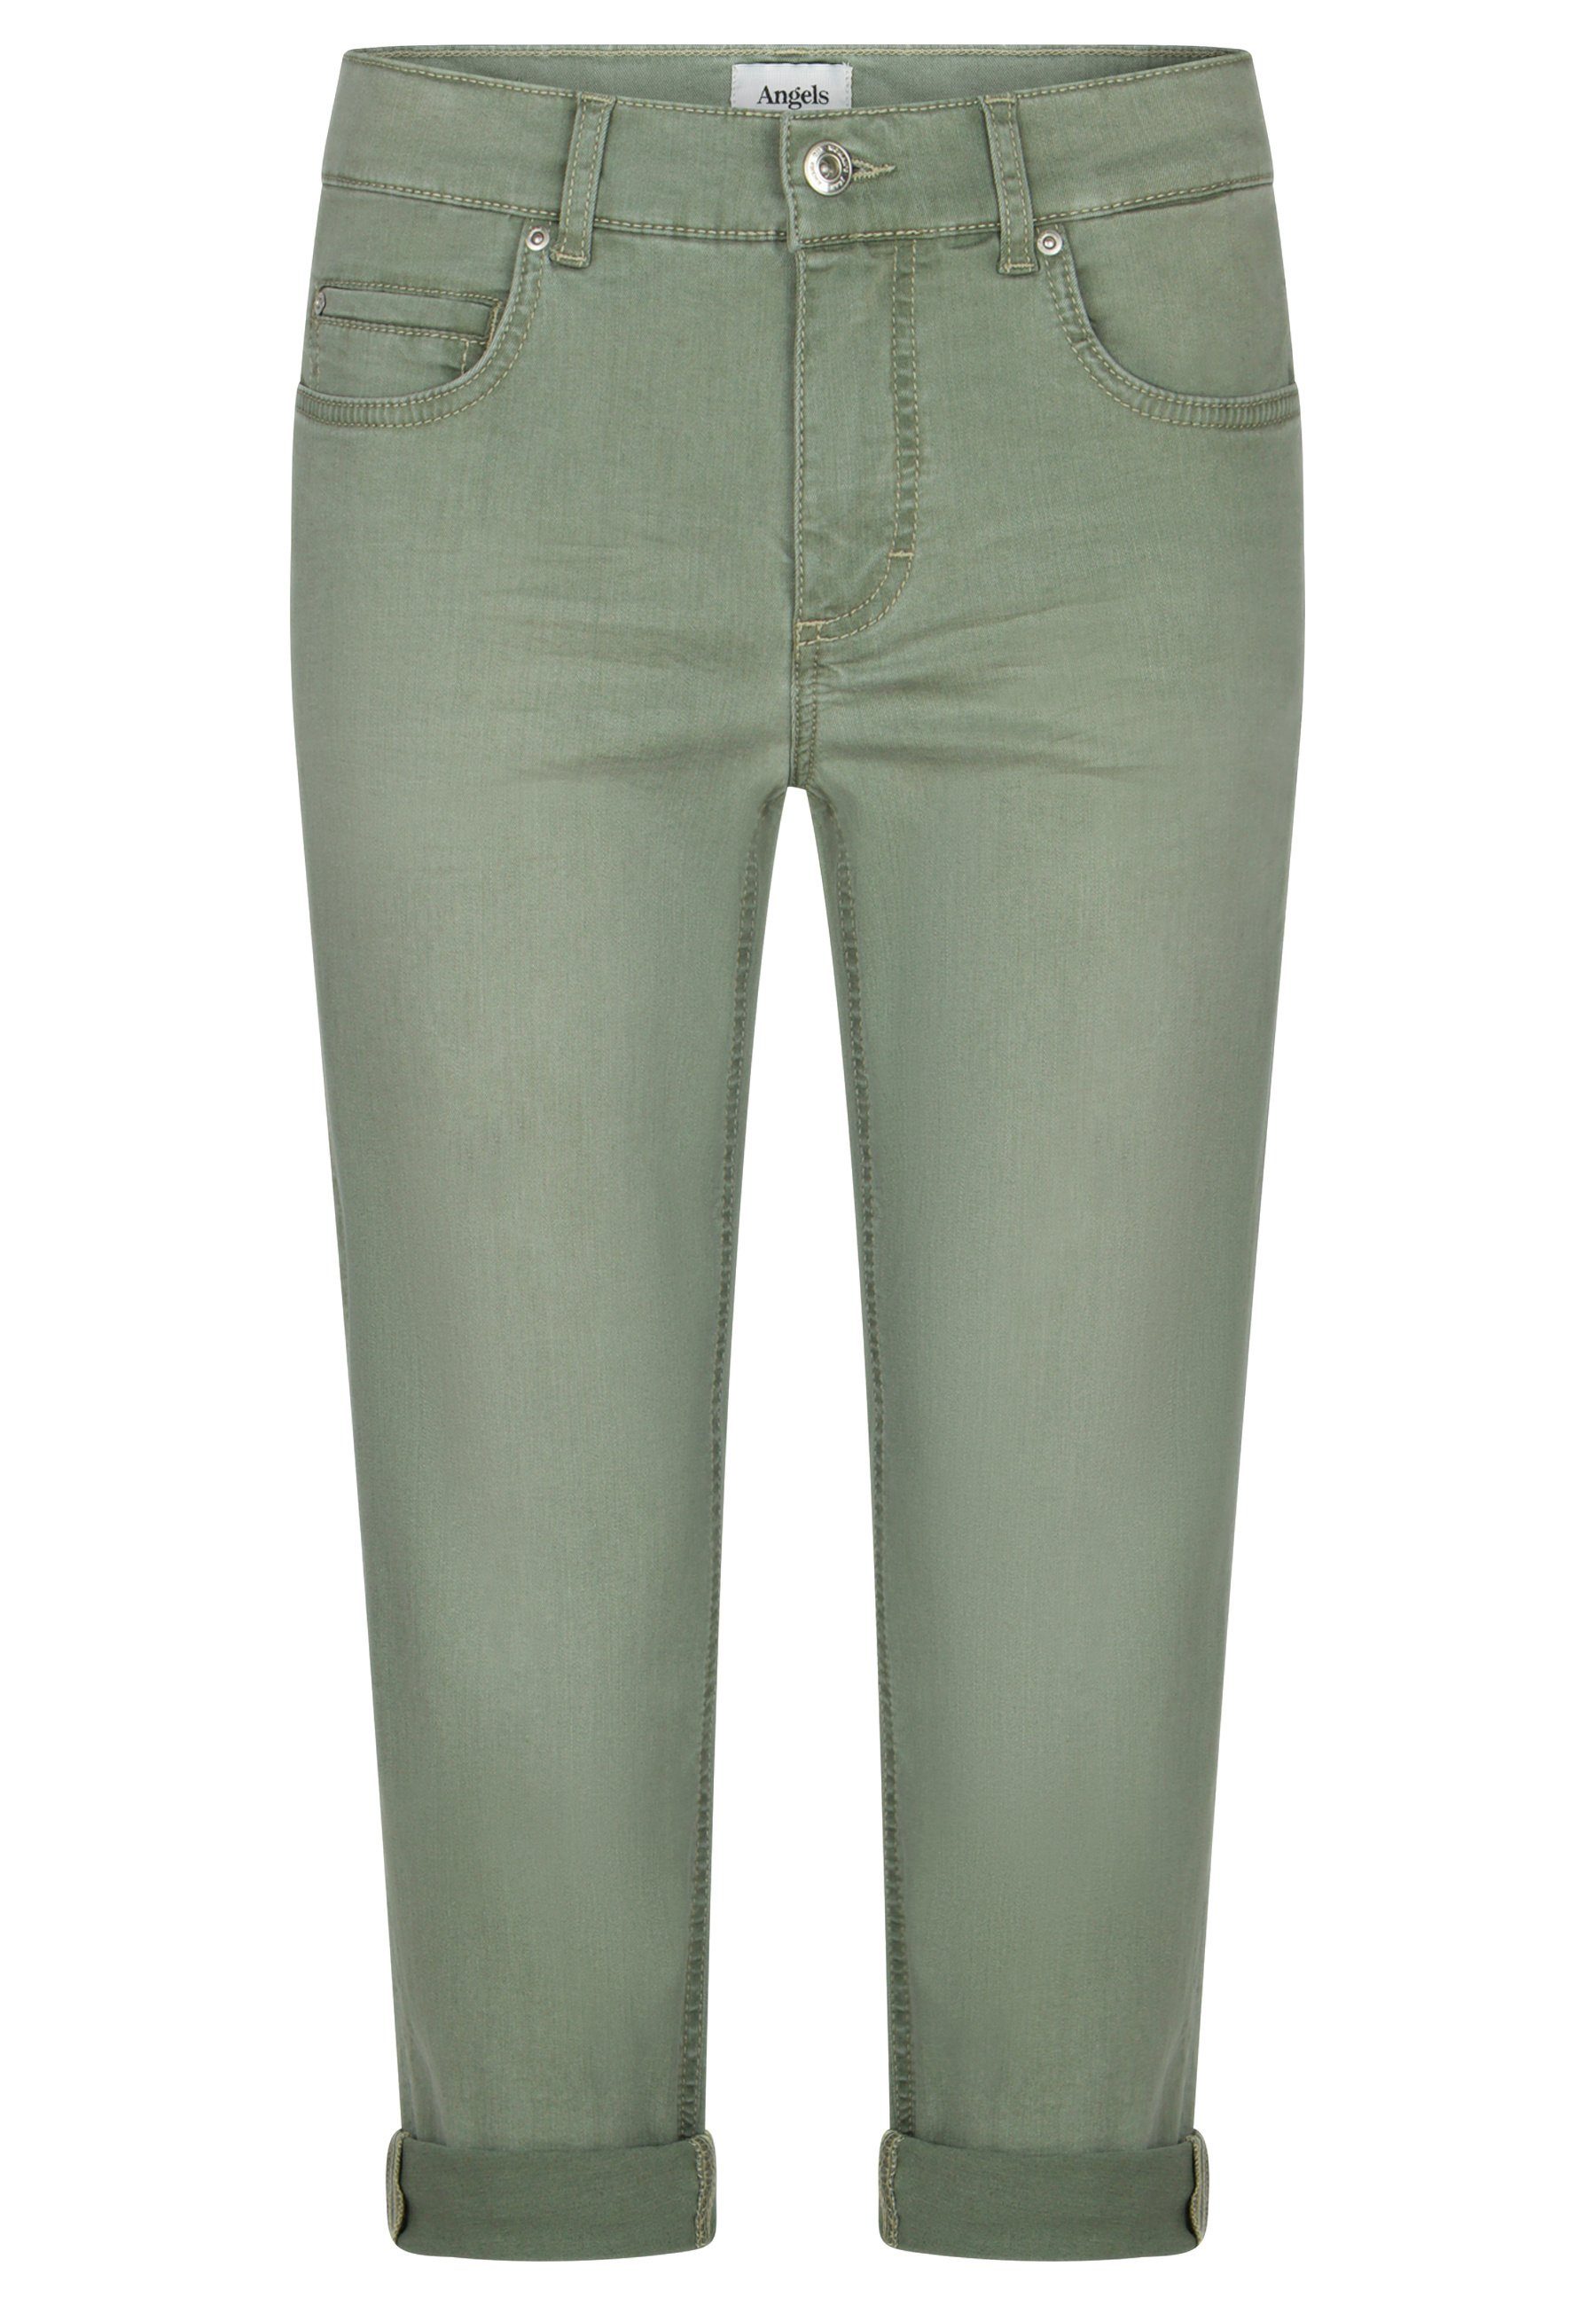 Cici Jeans Beinumschlag mit Label-Applikationen grün Straight-Jeans mit TU ANGELS